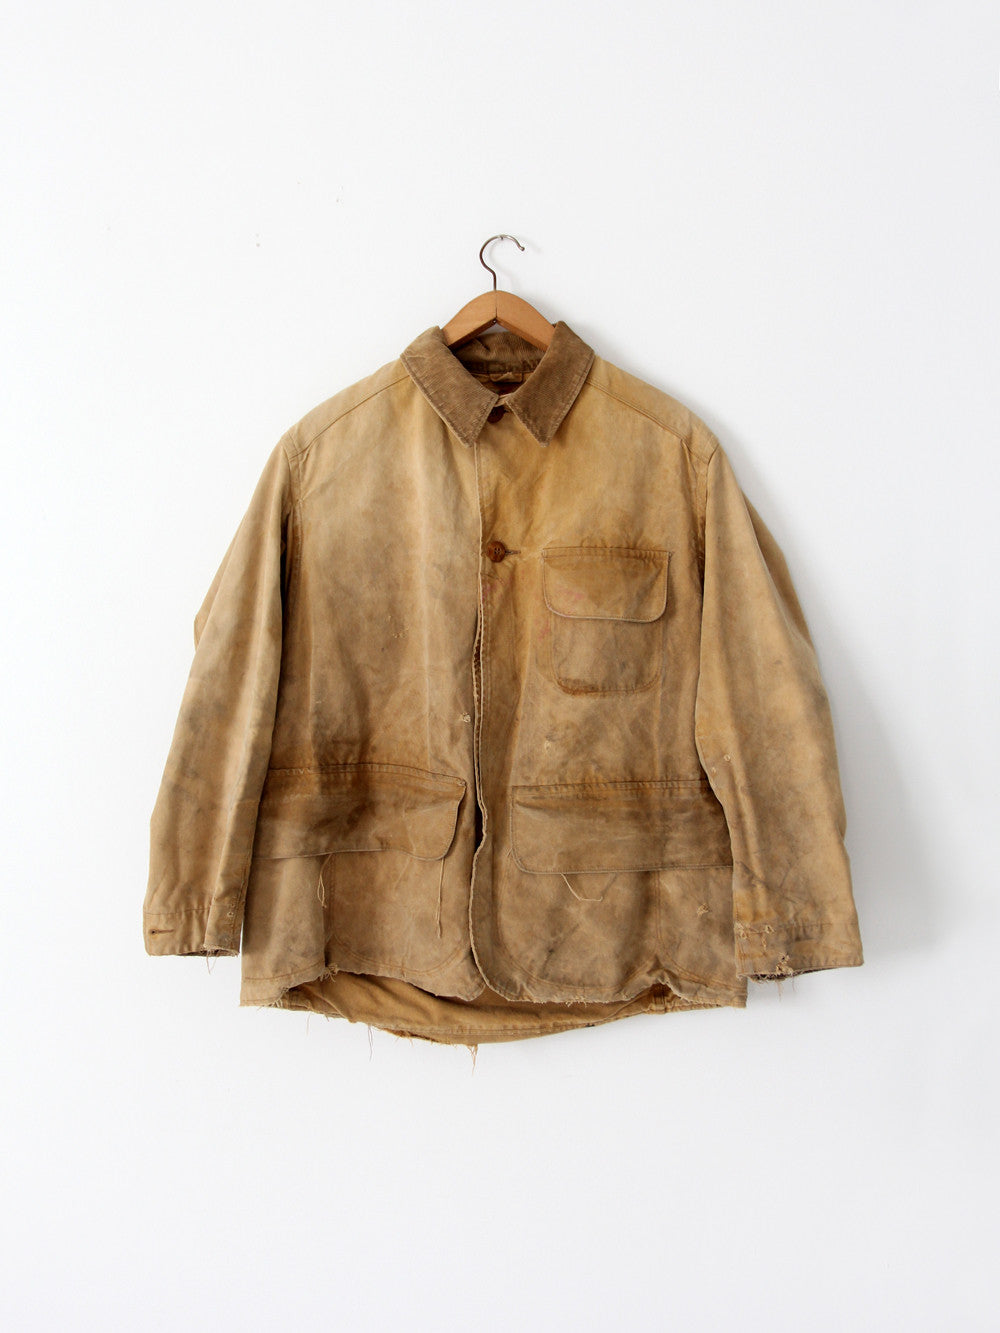 vintage 1930s Duxbak field coat